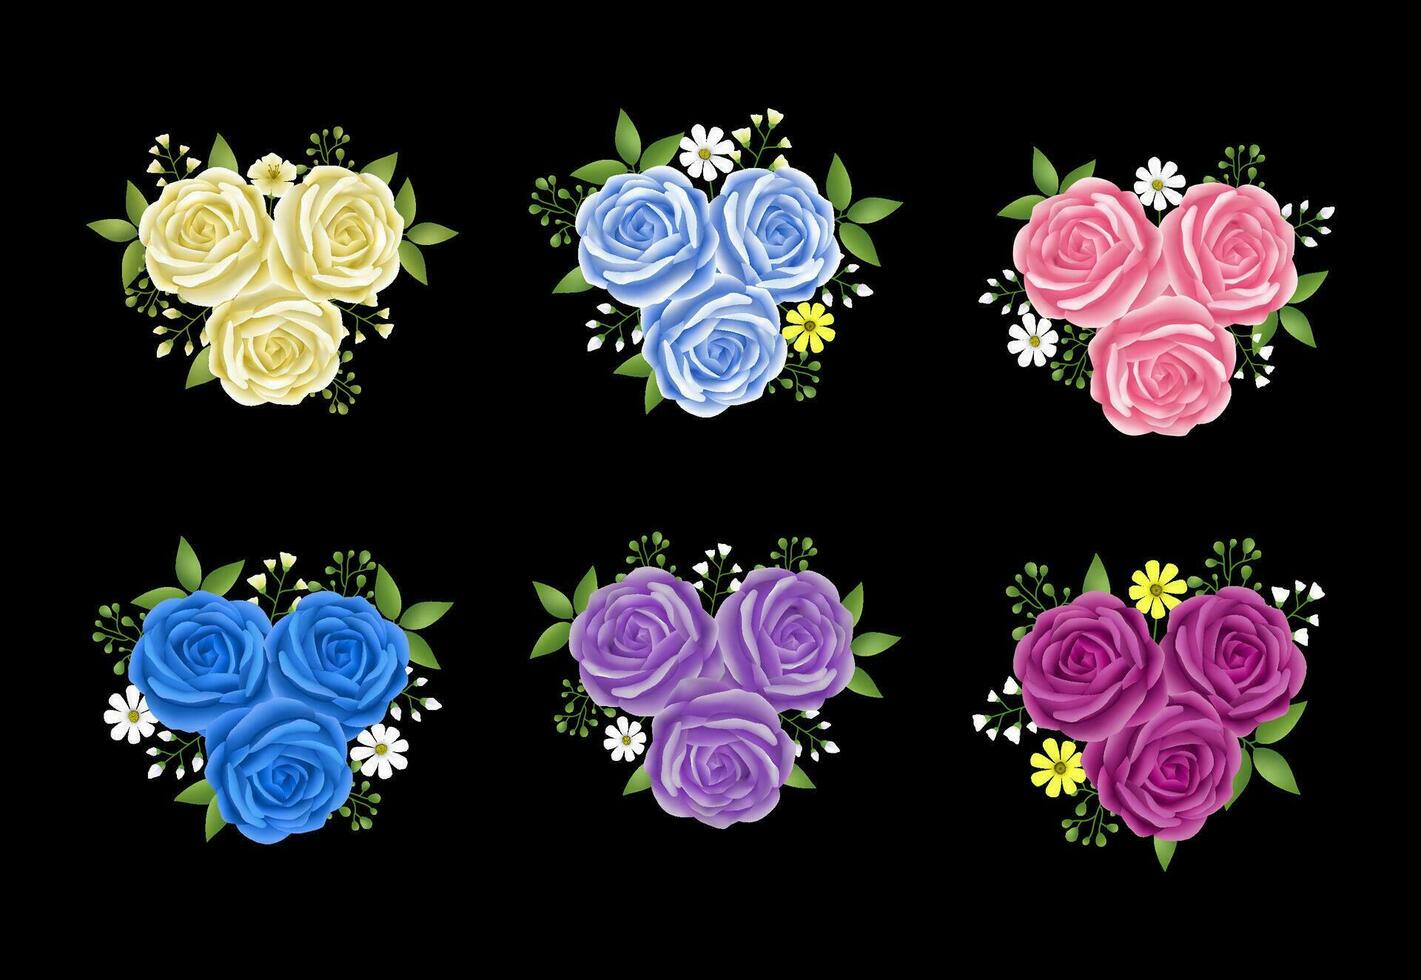 rozen bloemen bladeren slinger met cyaan blauw, beige, roze en Purper kleur set. bloemen hand- getrokken voor boeketten, kransen, arrangementen, bruiloft uitnodigingen, verjaardag, verjaardag, ansichtkaarten, groeten vector